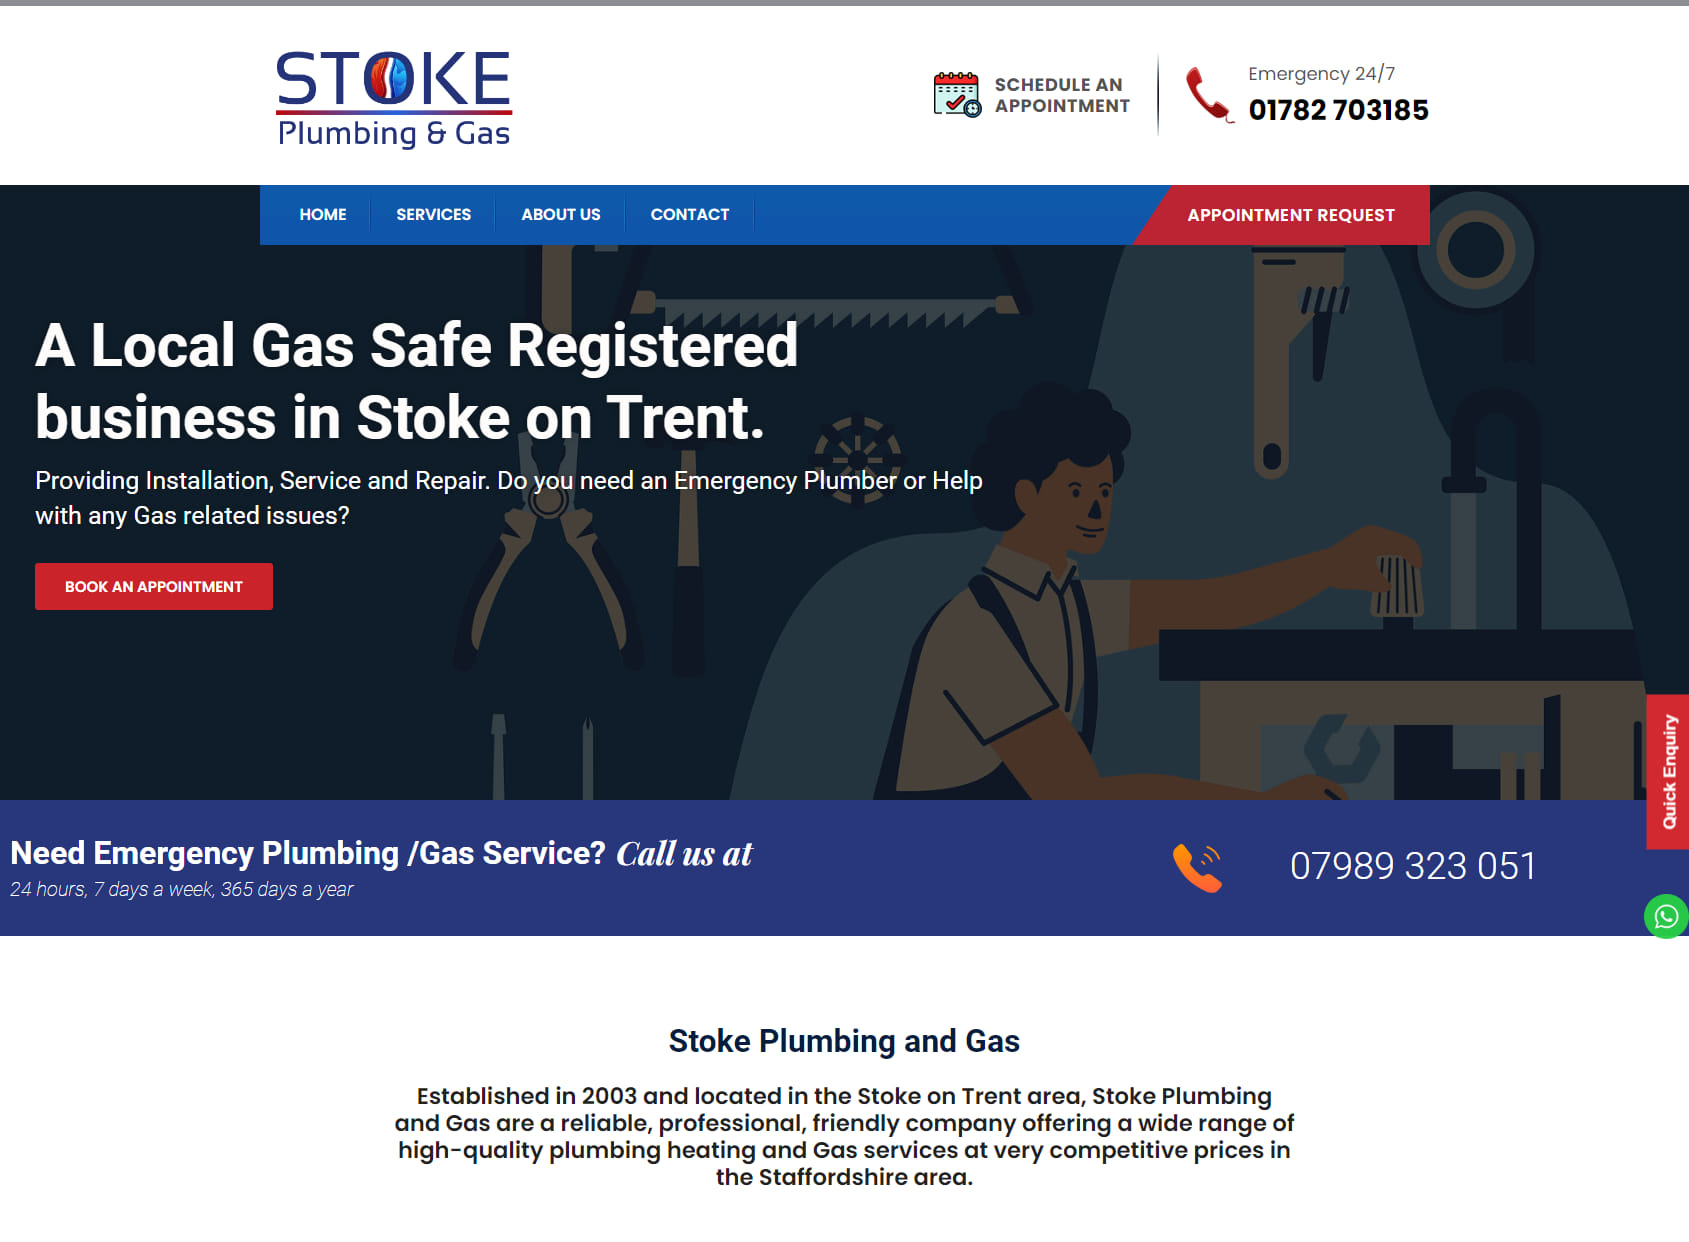 Stoke Plumbing and Gas